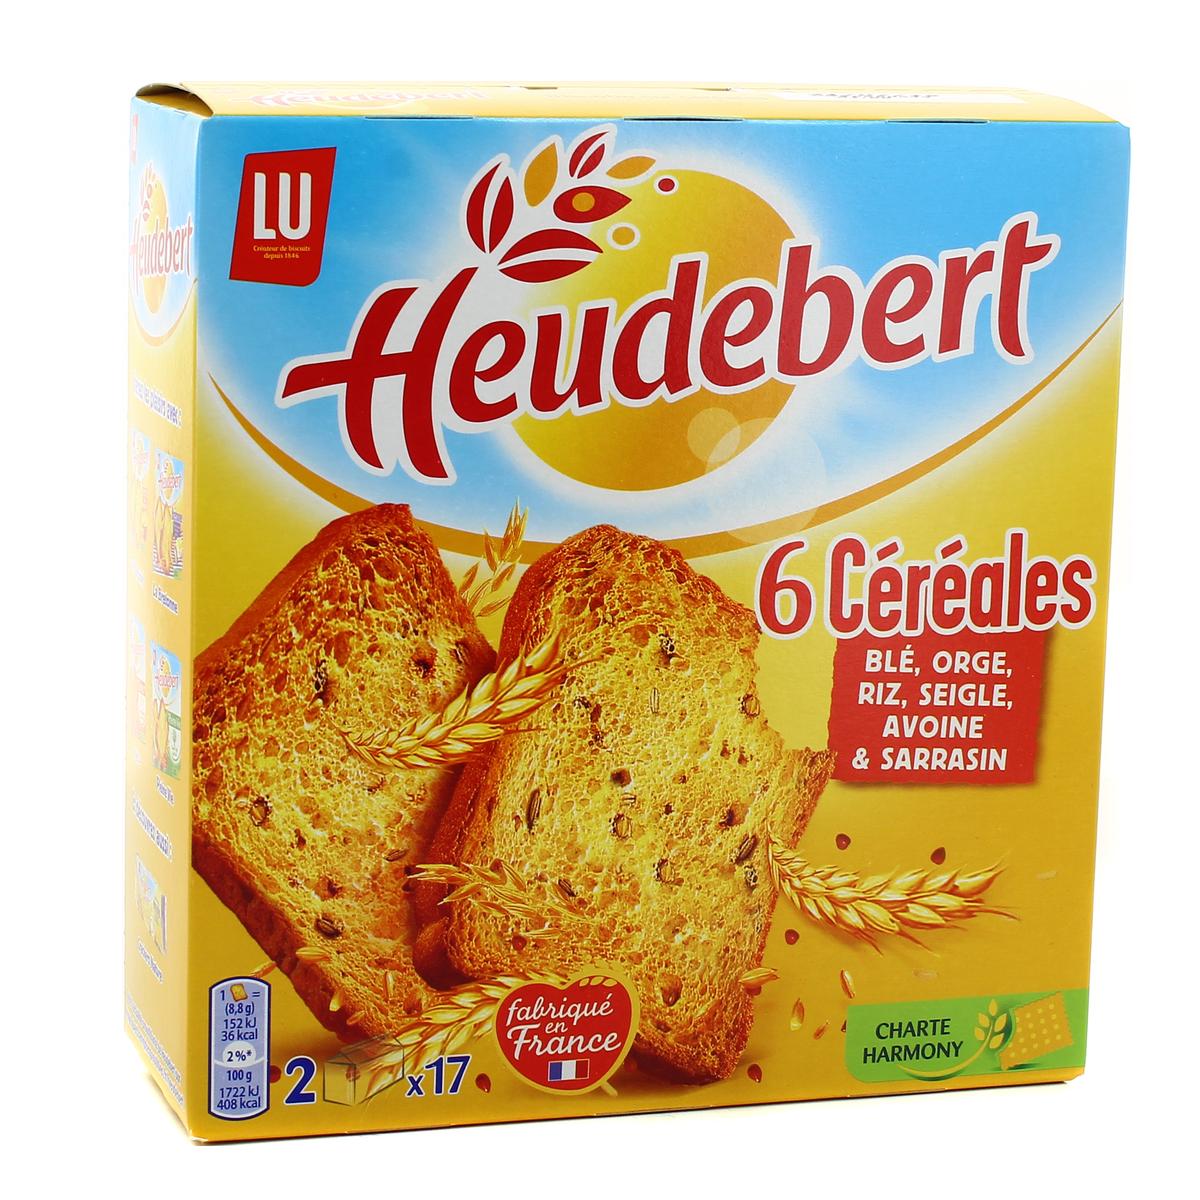 Biscottes Heudebert